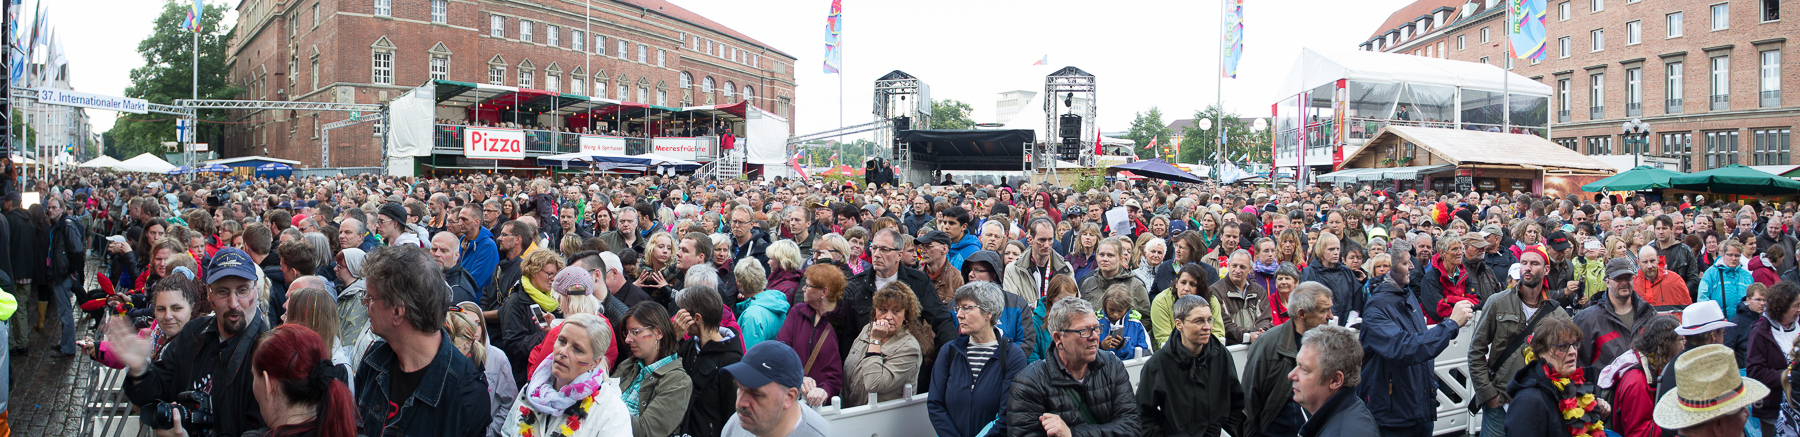 Kieler Woche: NDR auf der Rathausbühne